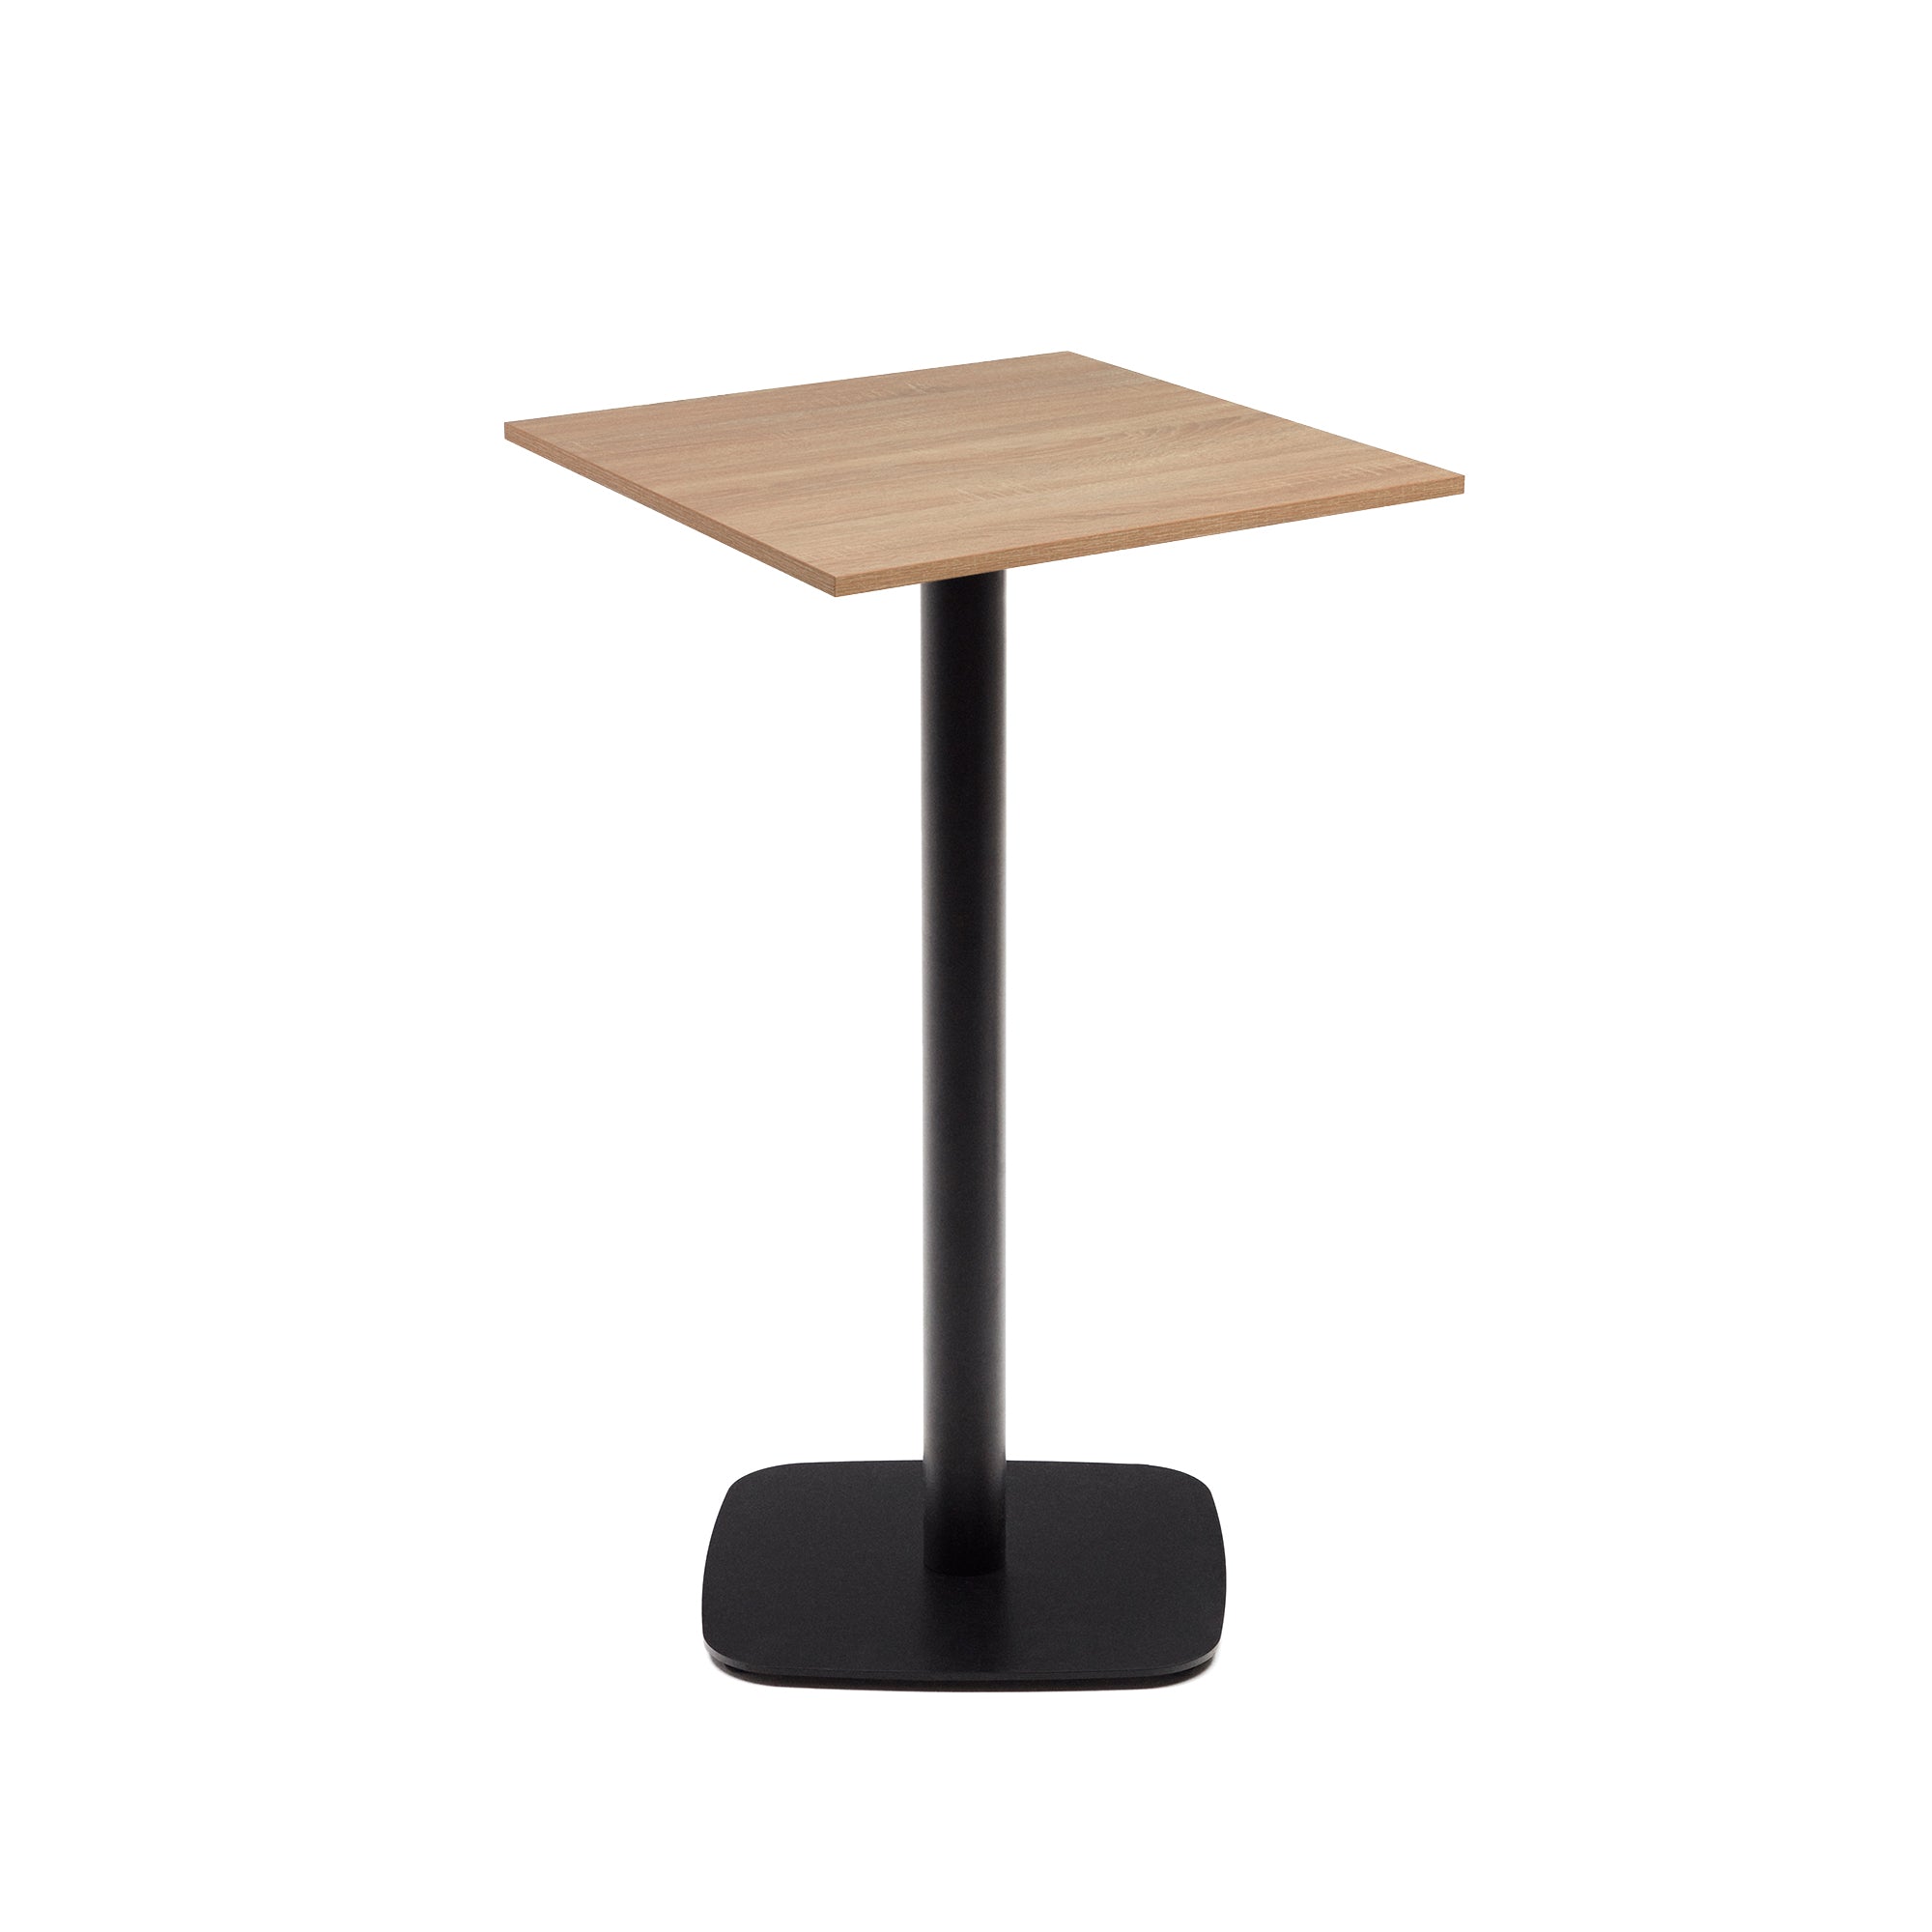 Dina magas asztal természetes melaminból, fekete festett fémlábbal, 60x60x96 cm, 60x60x96 cm